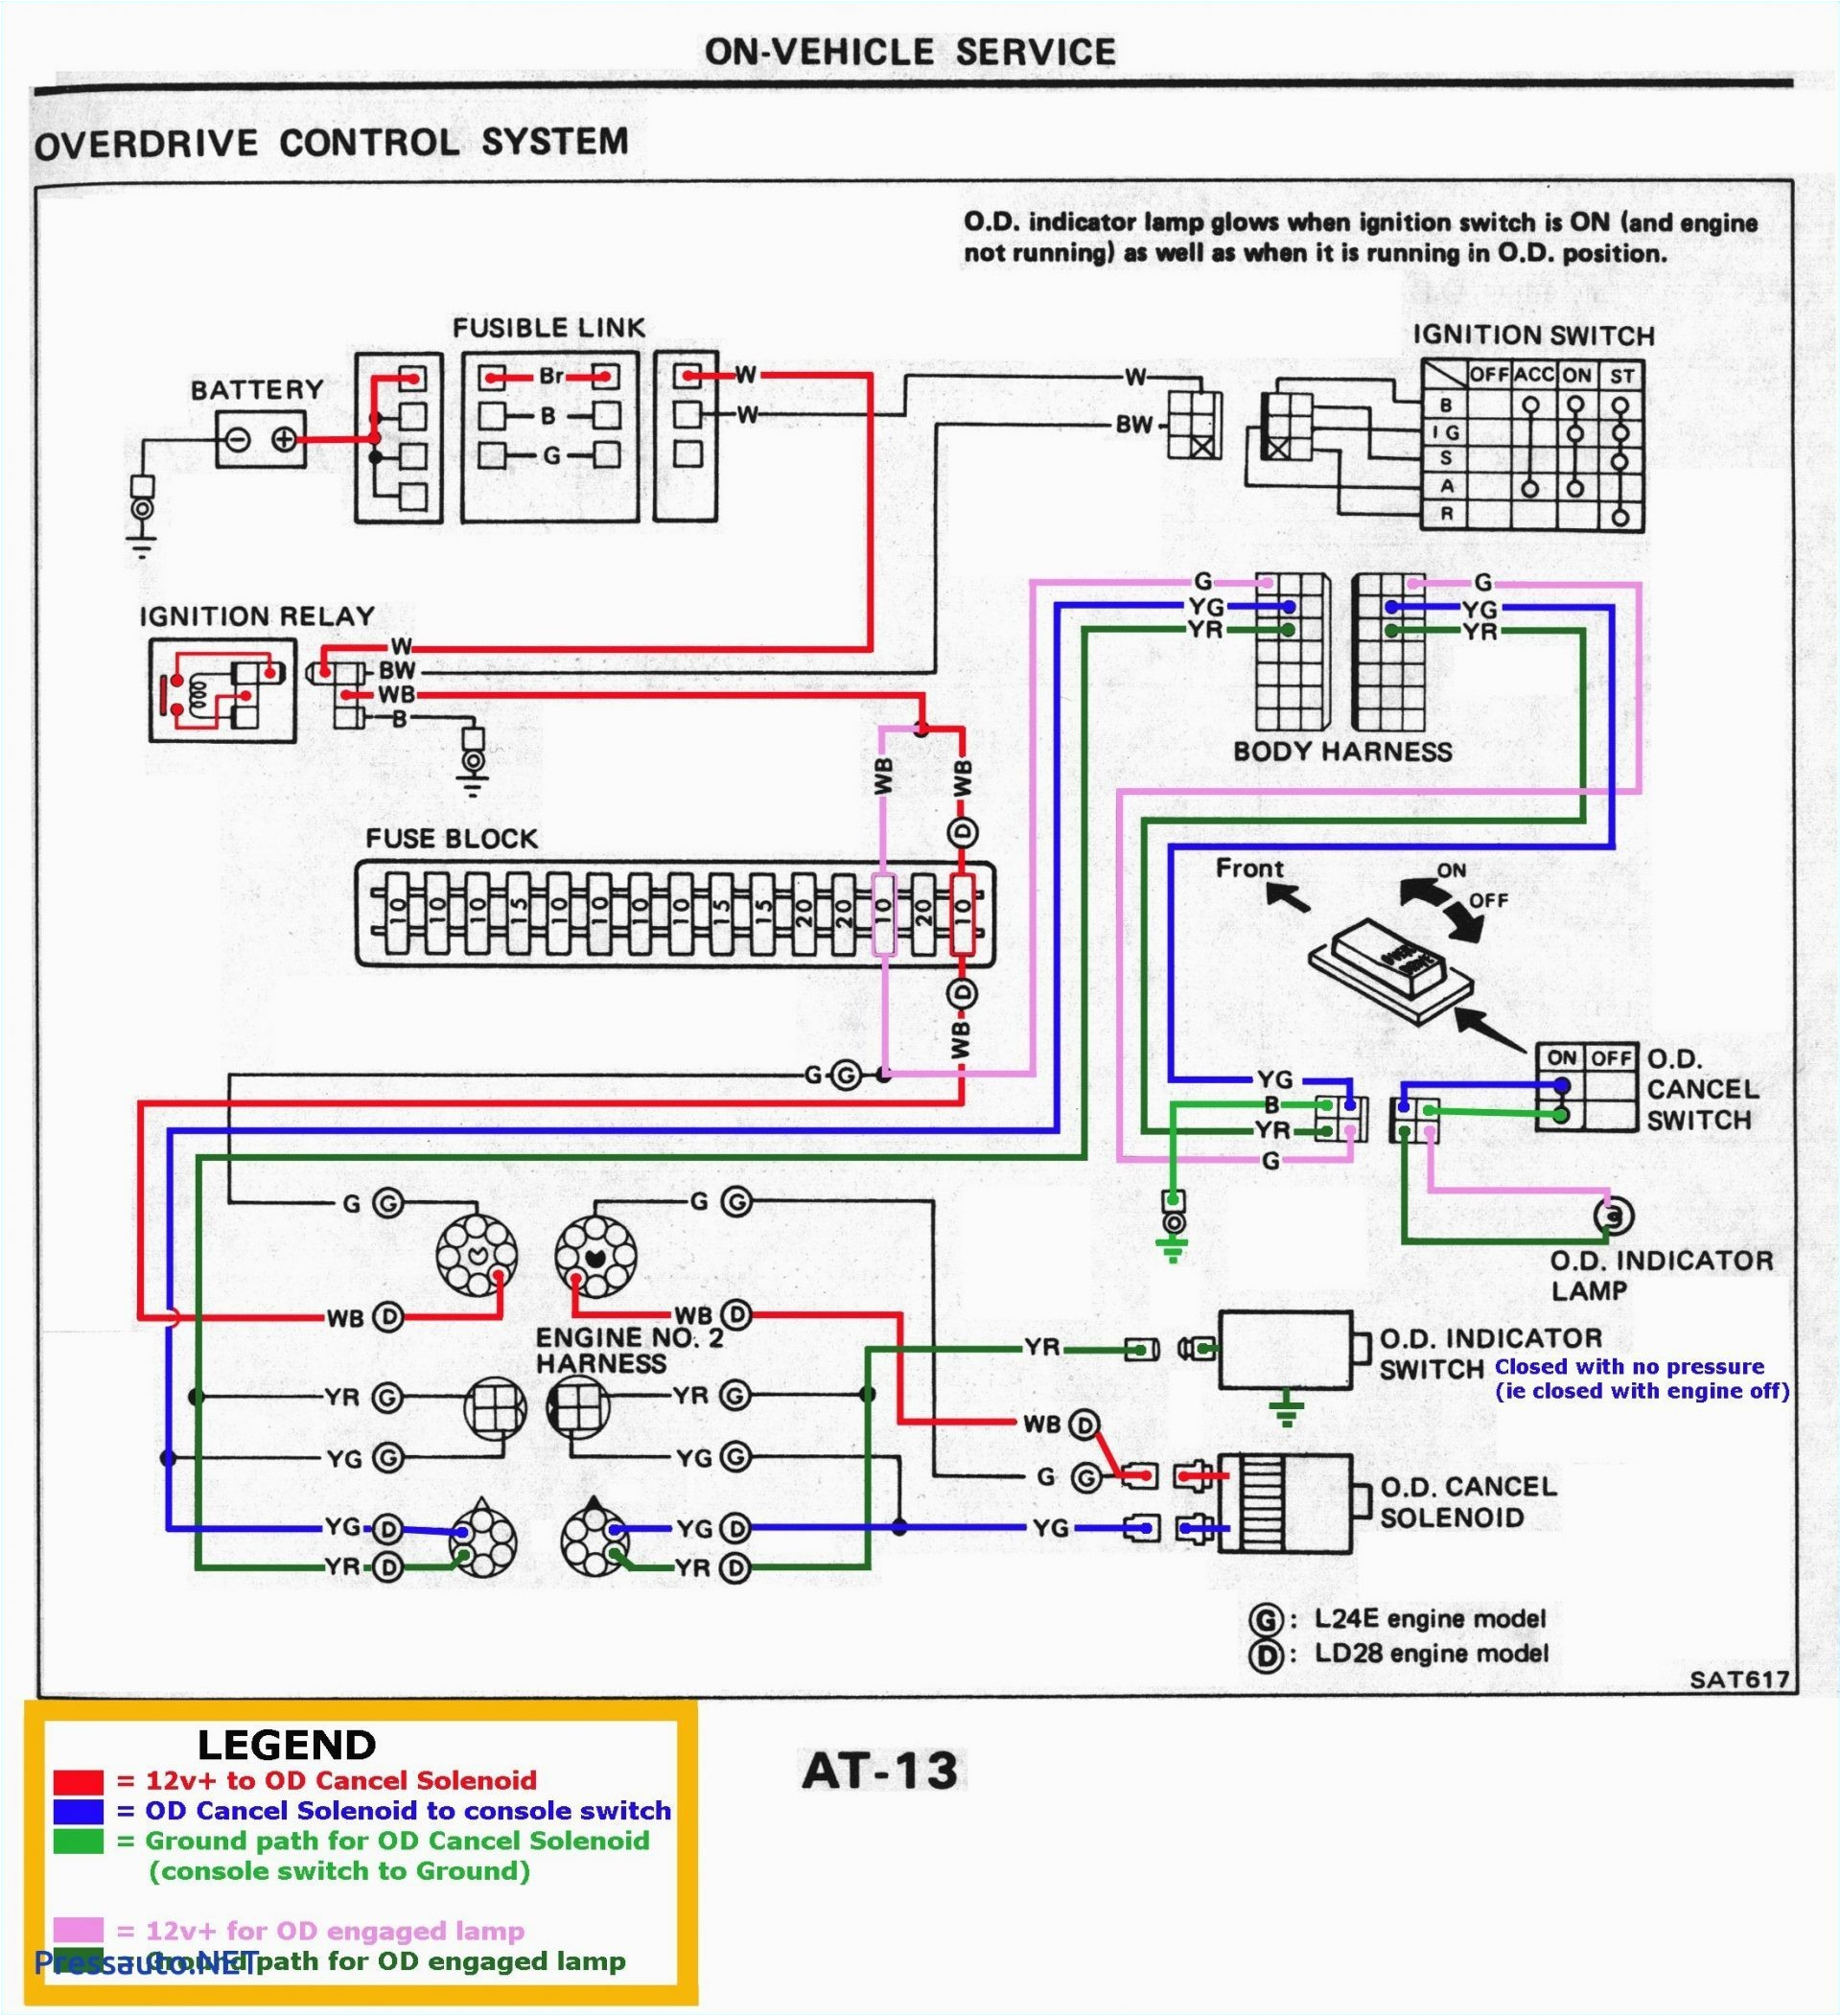 le9 wiring diagram wiring diagram namele9 wiring diagram my wiring diagram le9 wiring diagram